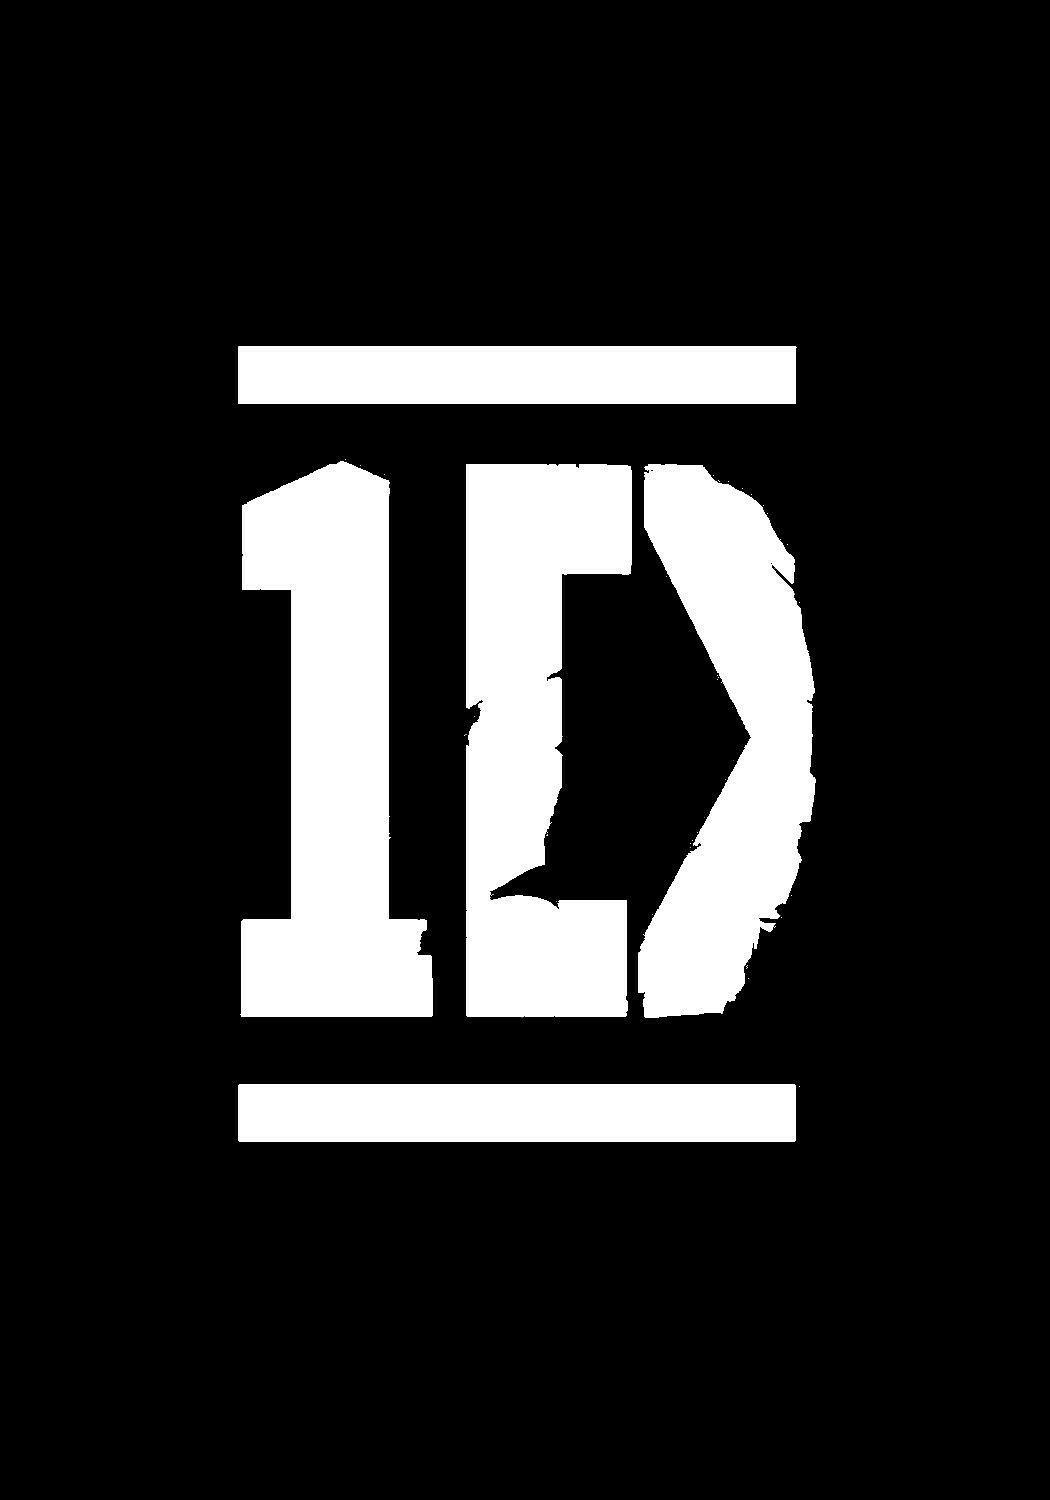 I Love One Direction Logo - ONE DIRECTION logo | ONE DIRECTION LOGO | One Direction, One ...